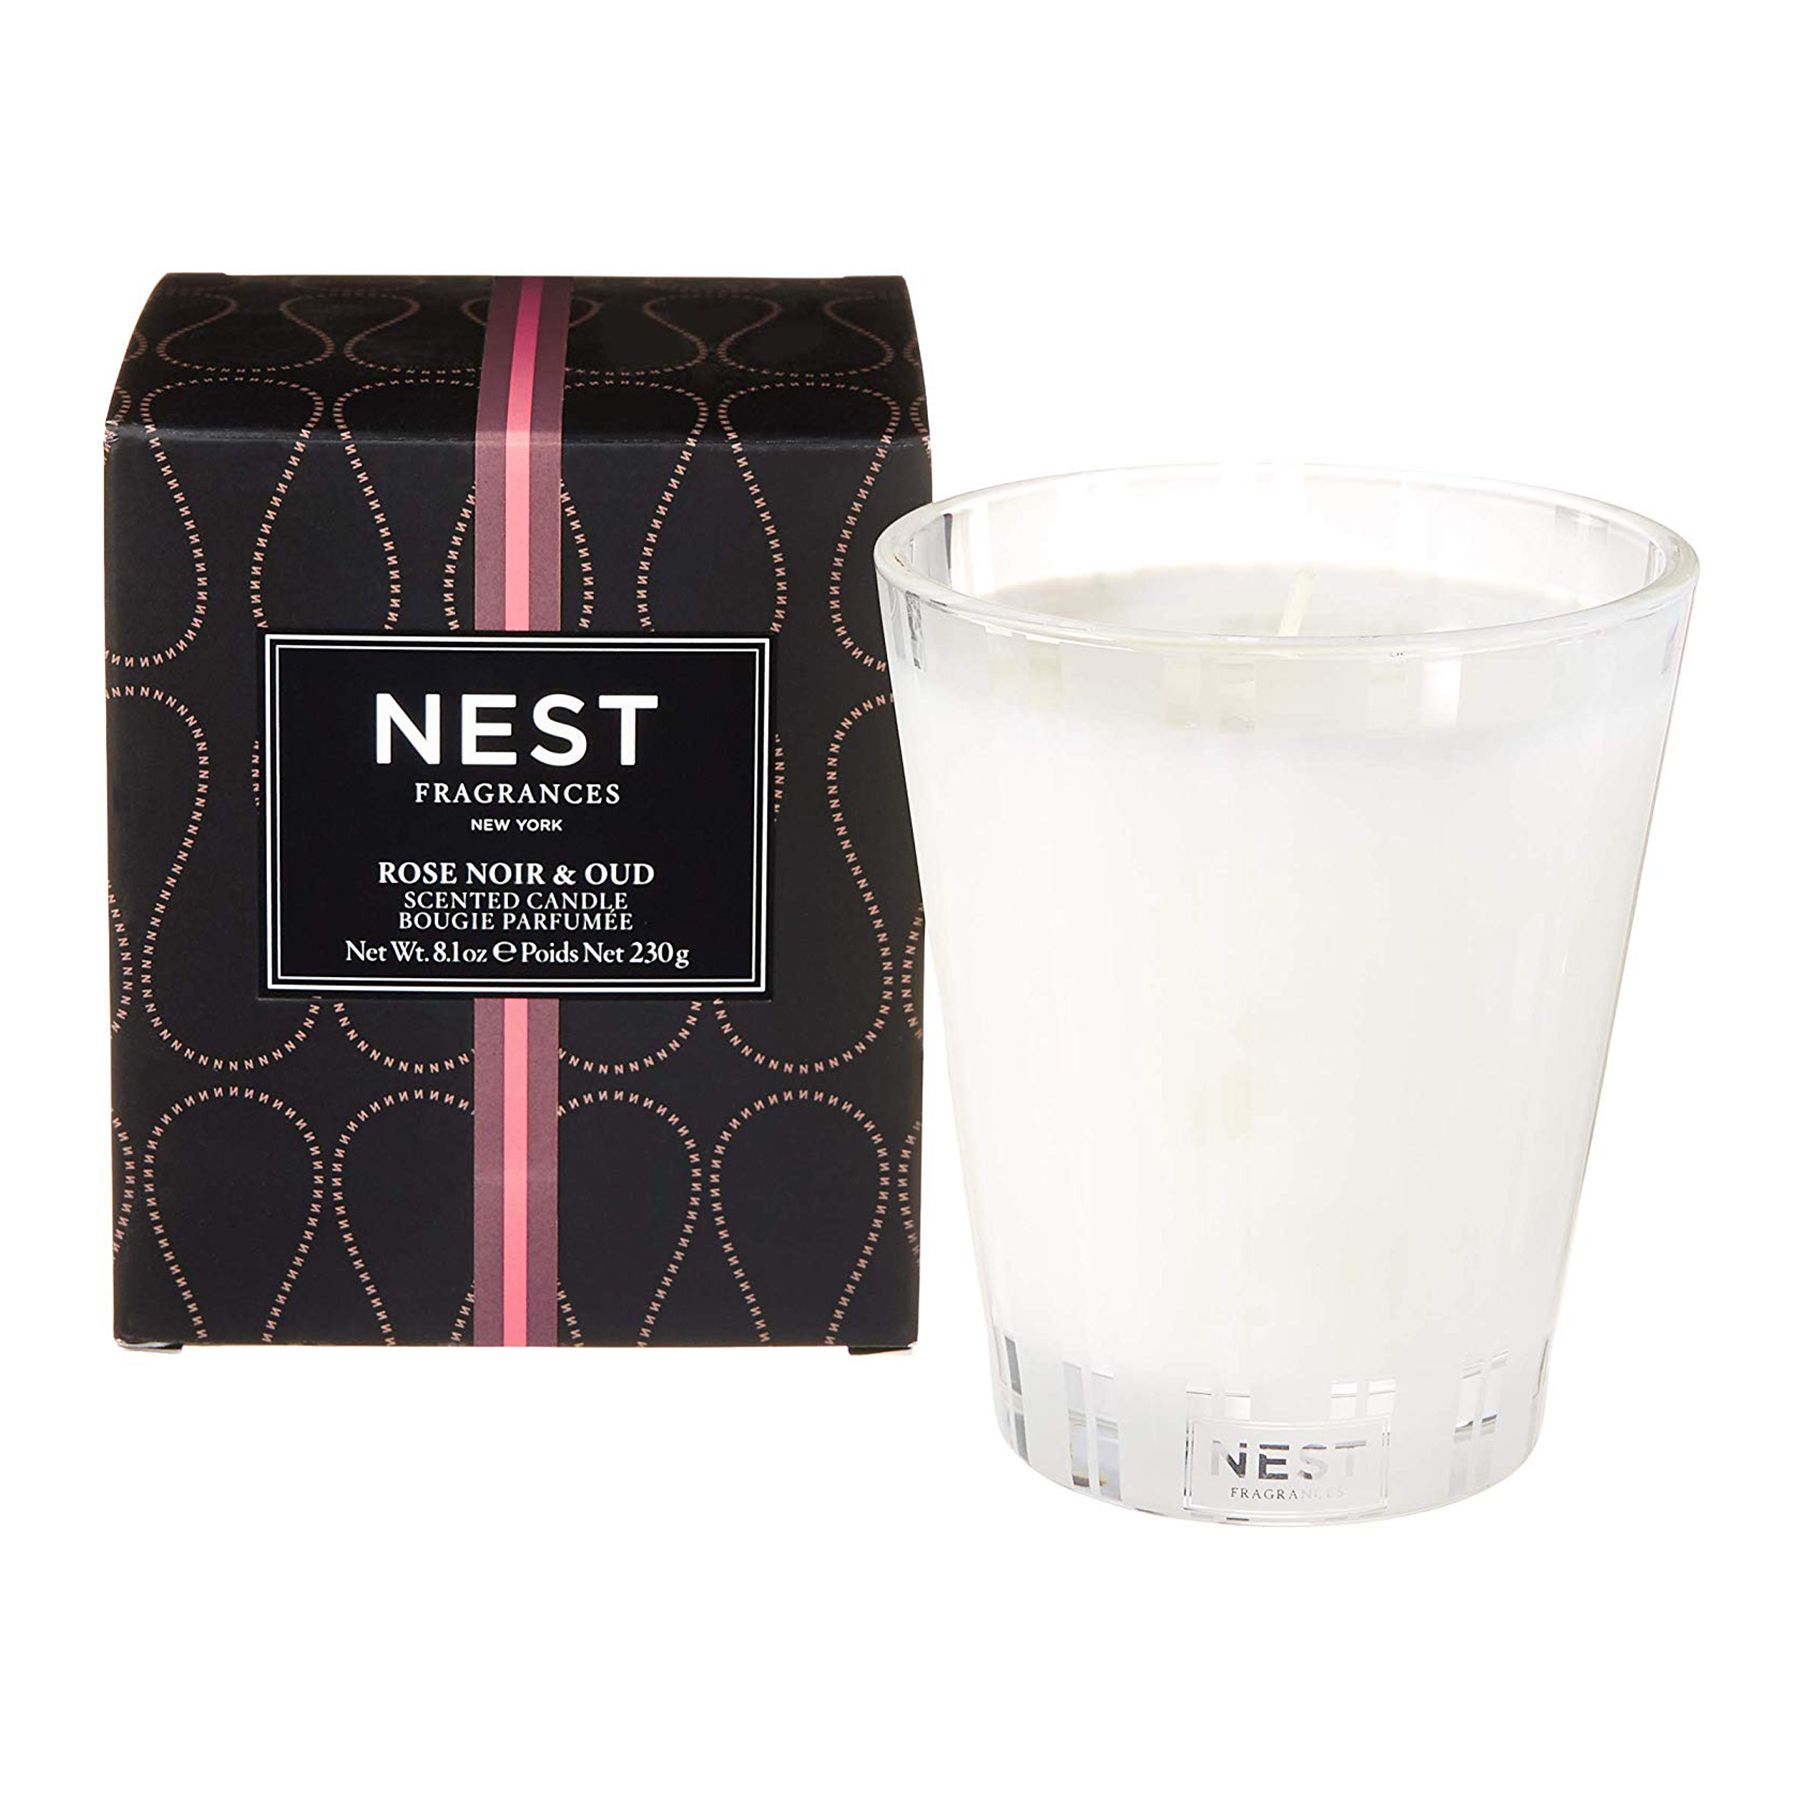 Լավագույն նվերներ կանանց համար ՝ Nest մոմեր